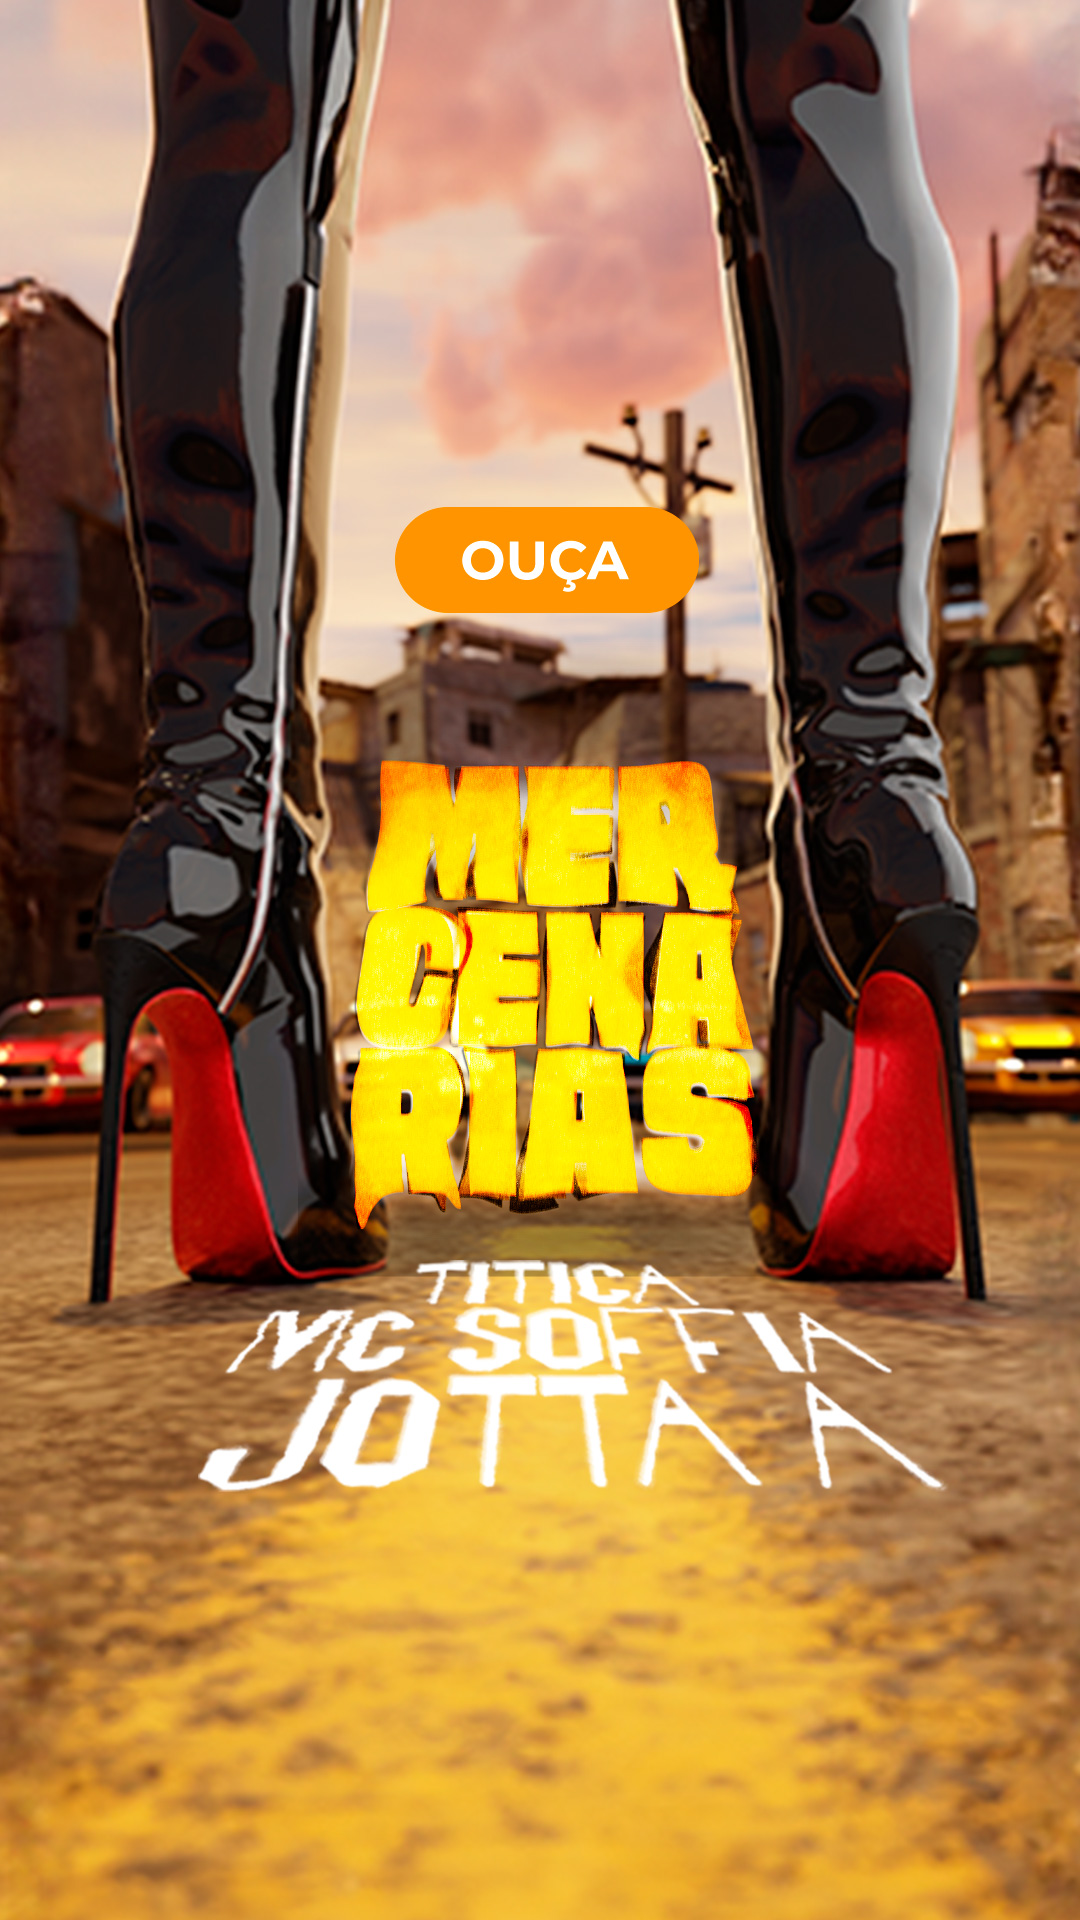 Jotta A - Mercenárias